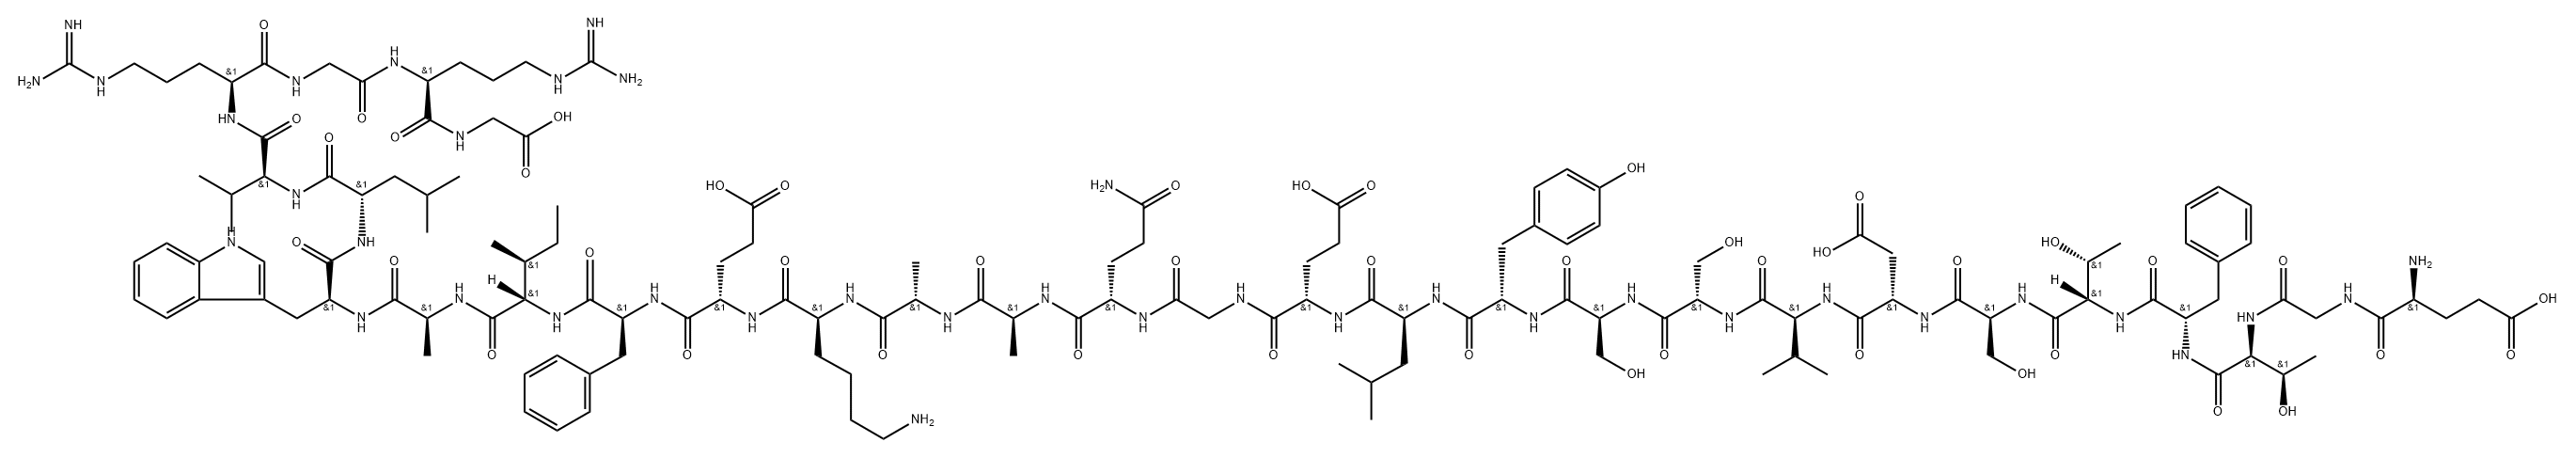 Glycine, L-α-glutamylglycyl-L-threonyl-L-phenylalanyl-L-threonyl-L-seryl-L-α-aspartyl-L-valyl-L-seryl-L-seryl-L-tyrosyl-L-leucyl-L-α-glutamylglycyl-L-glutaminyl-L-alanyl-L-alanyl-L-lysyl-L-α-glutamyl-L-phenylalanyl-L-isoleucyl-L-alanyl-L-tryptophyl-L-leucyl-L-valyl-L-arginylglycyl-L-arginyl- 구조식 이미지